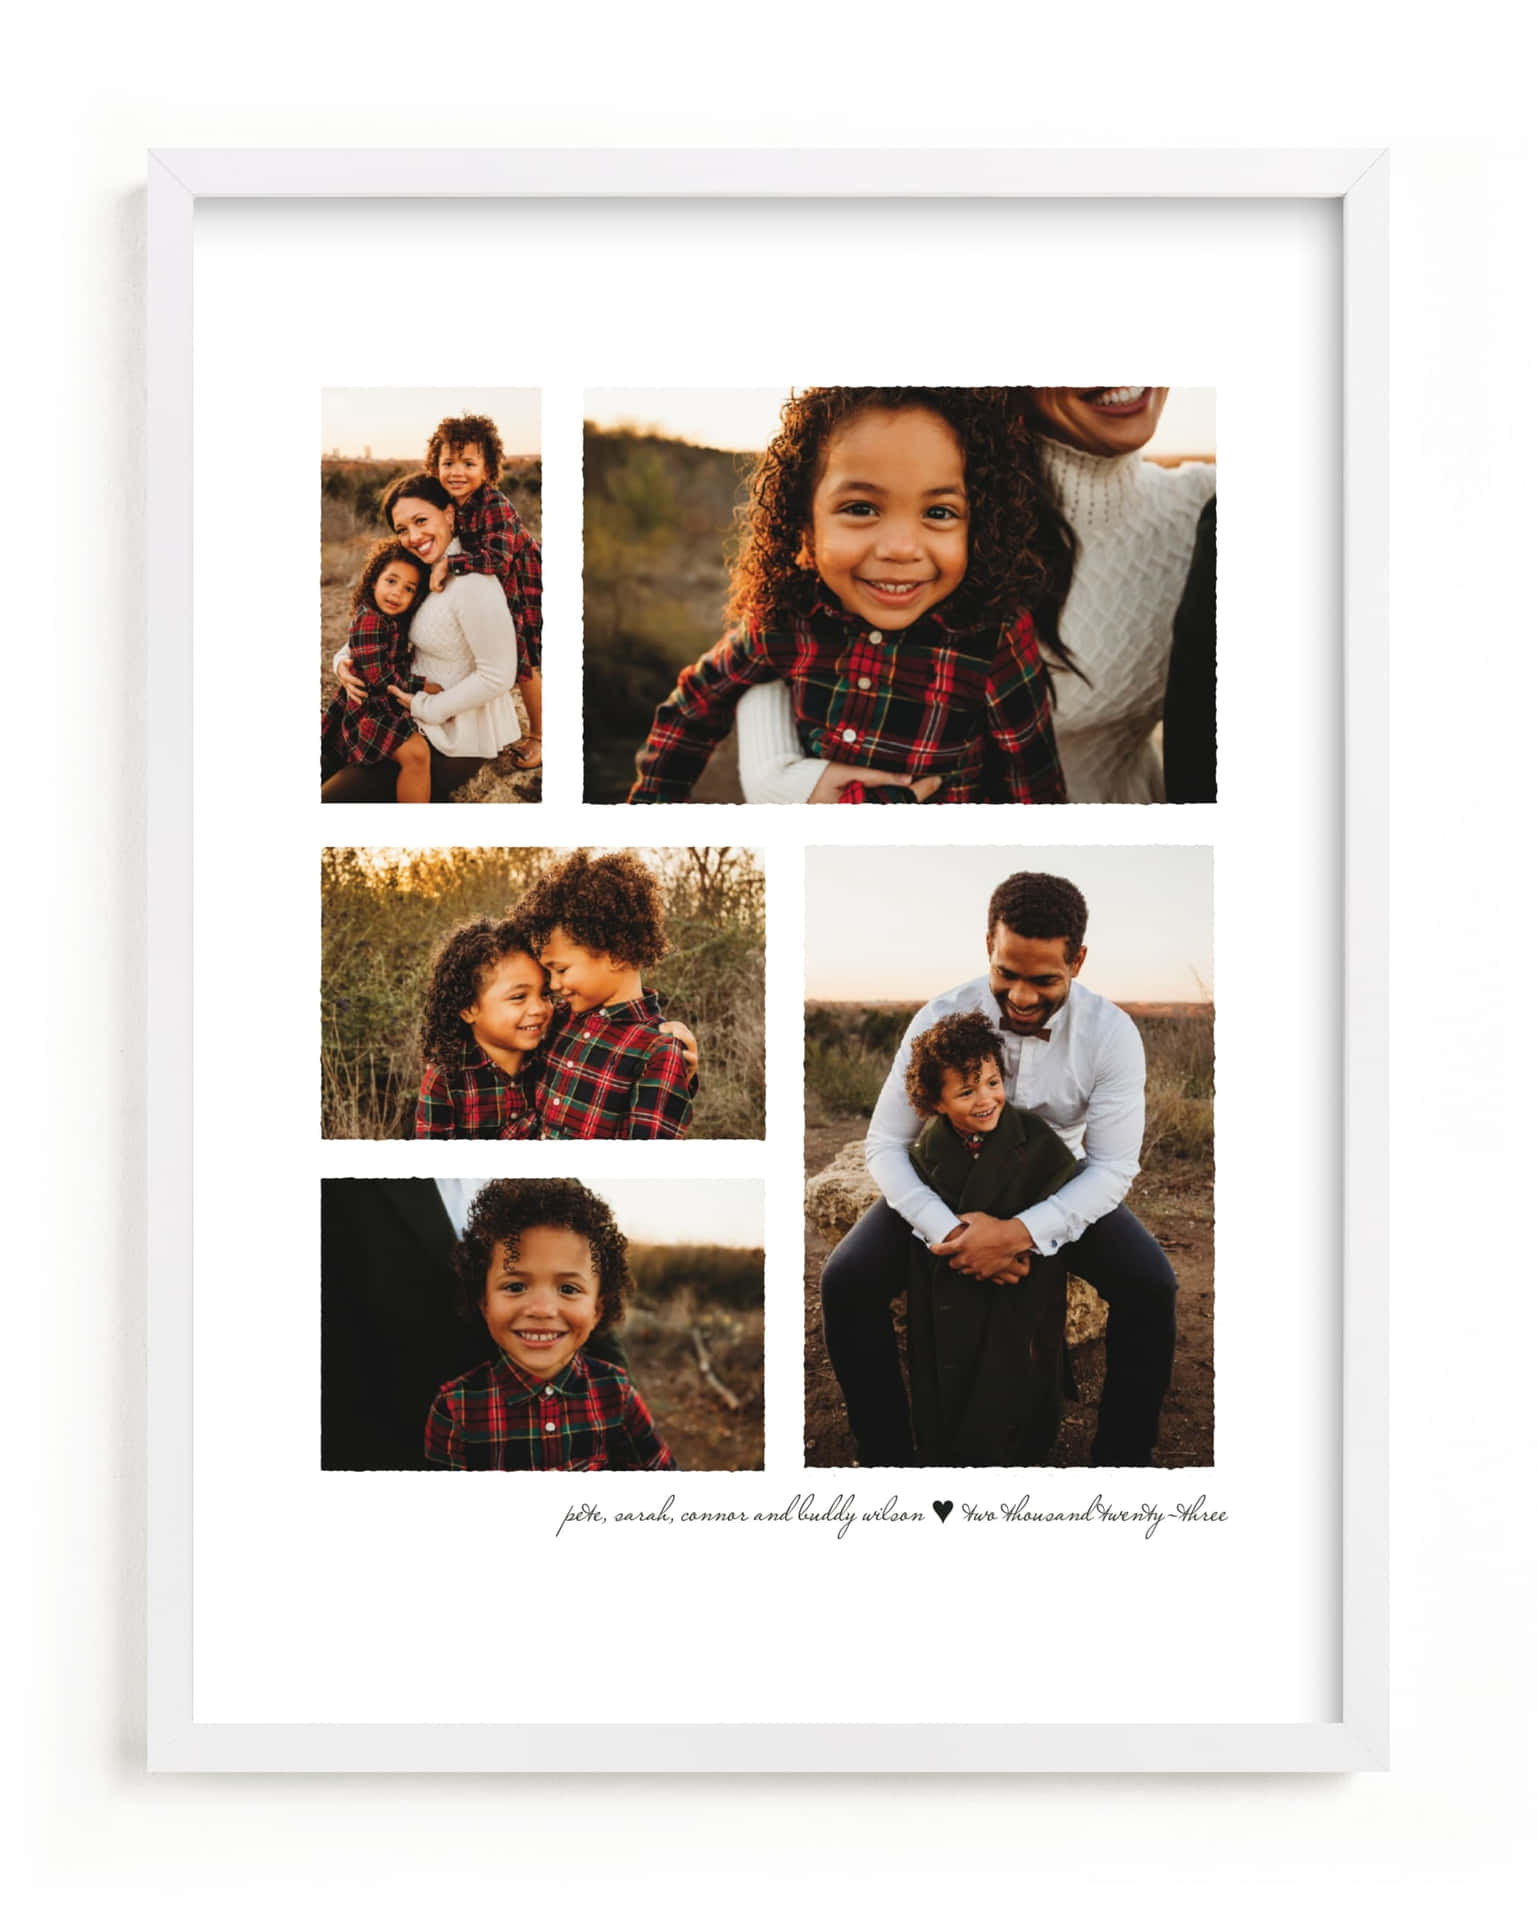 Einefamilienfoto-collage In Einem Weißen Rahmen.